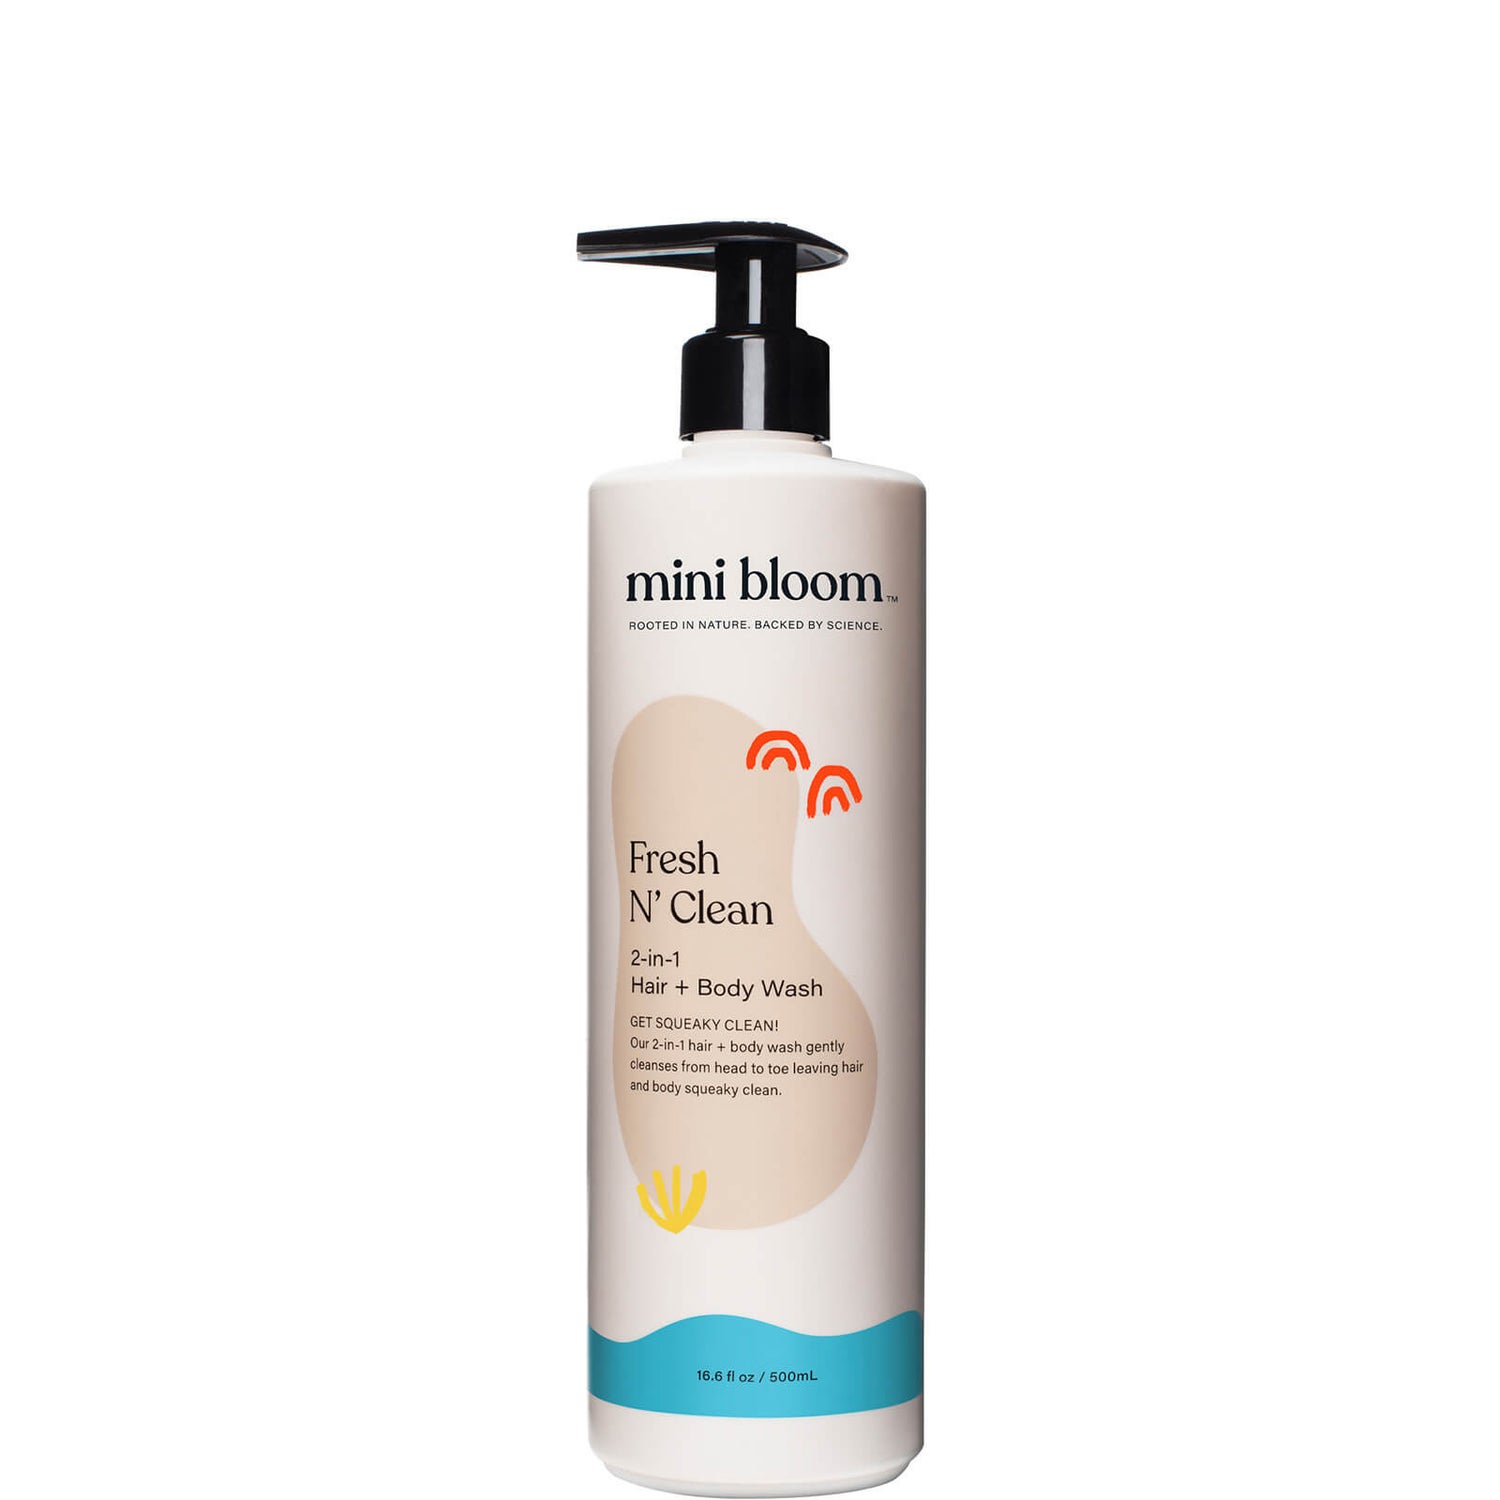 Mini Bloom Fresh N' Clean 2-in-1 Body and Hair Wash